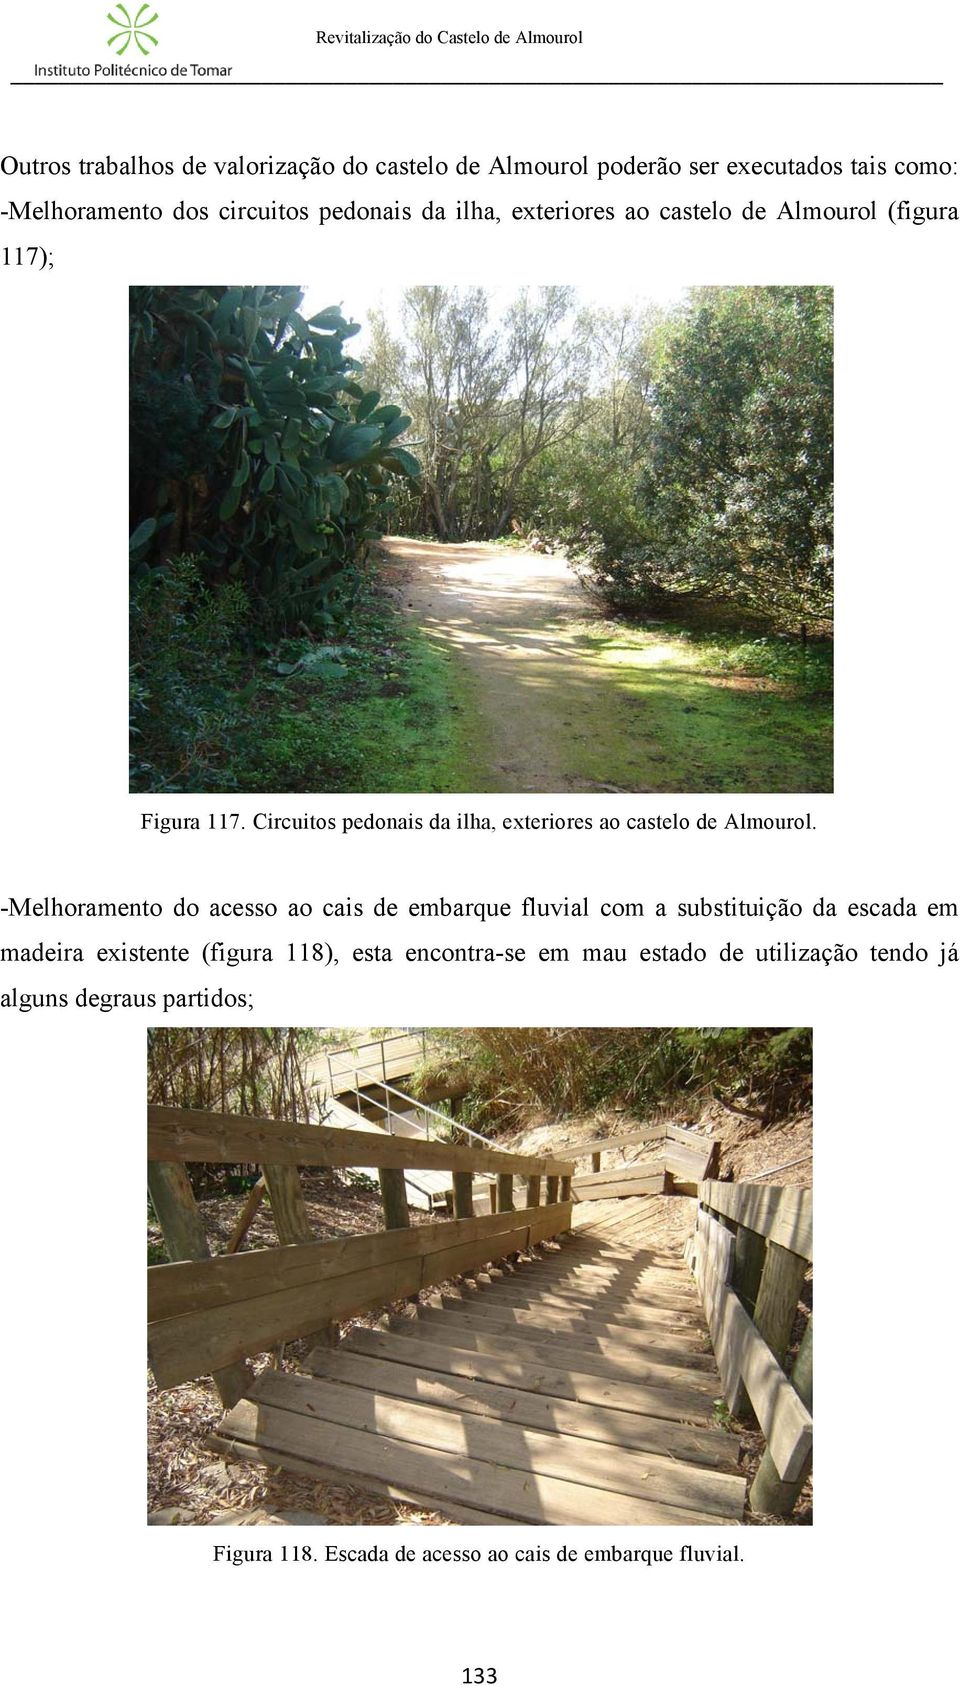 -Melhoramento do acesso ao cais de embarque fluvial com a substituição da escada em madeira existente (figura 118), esta